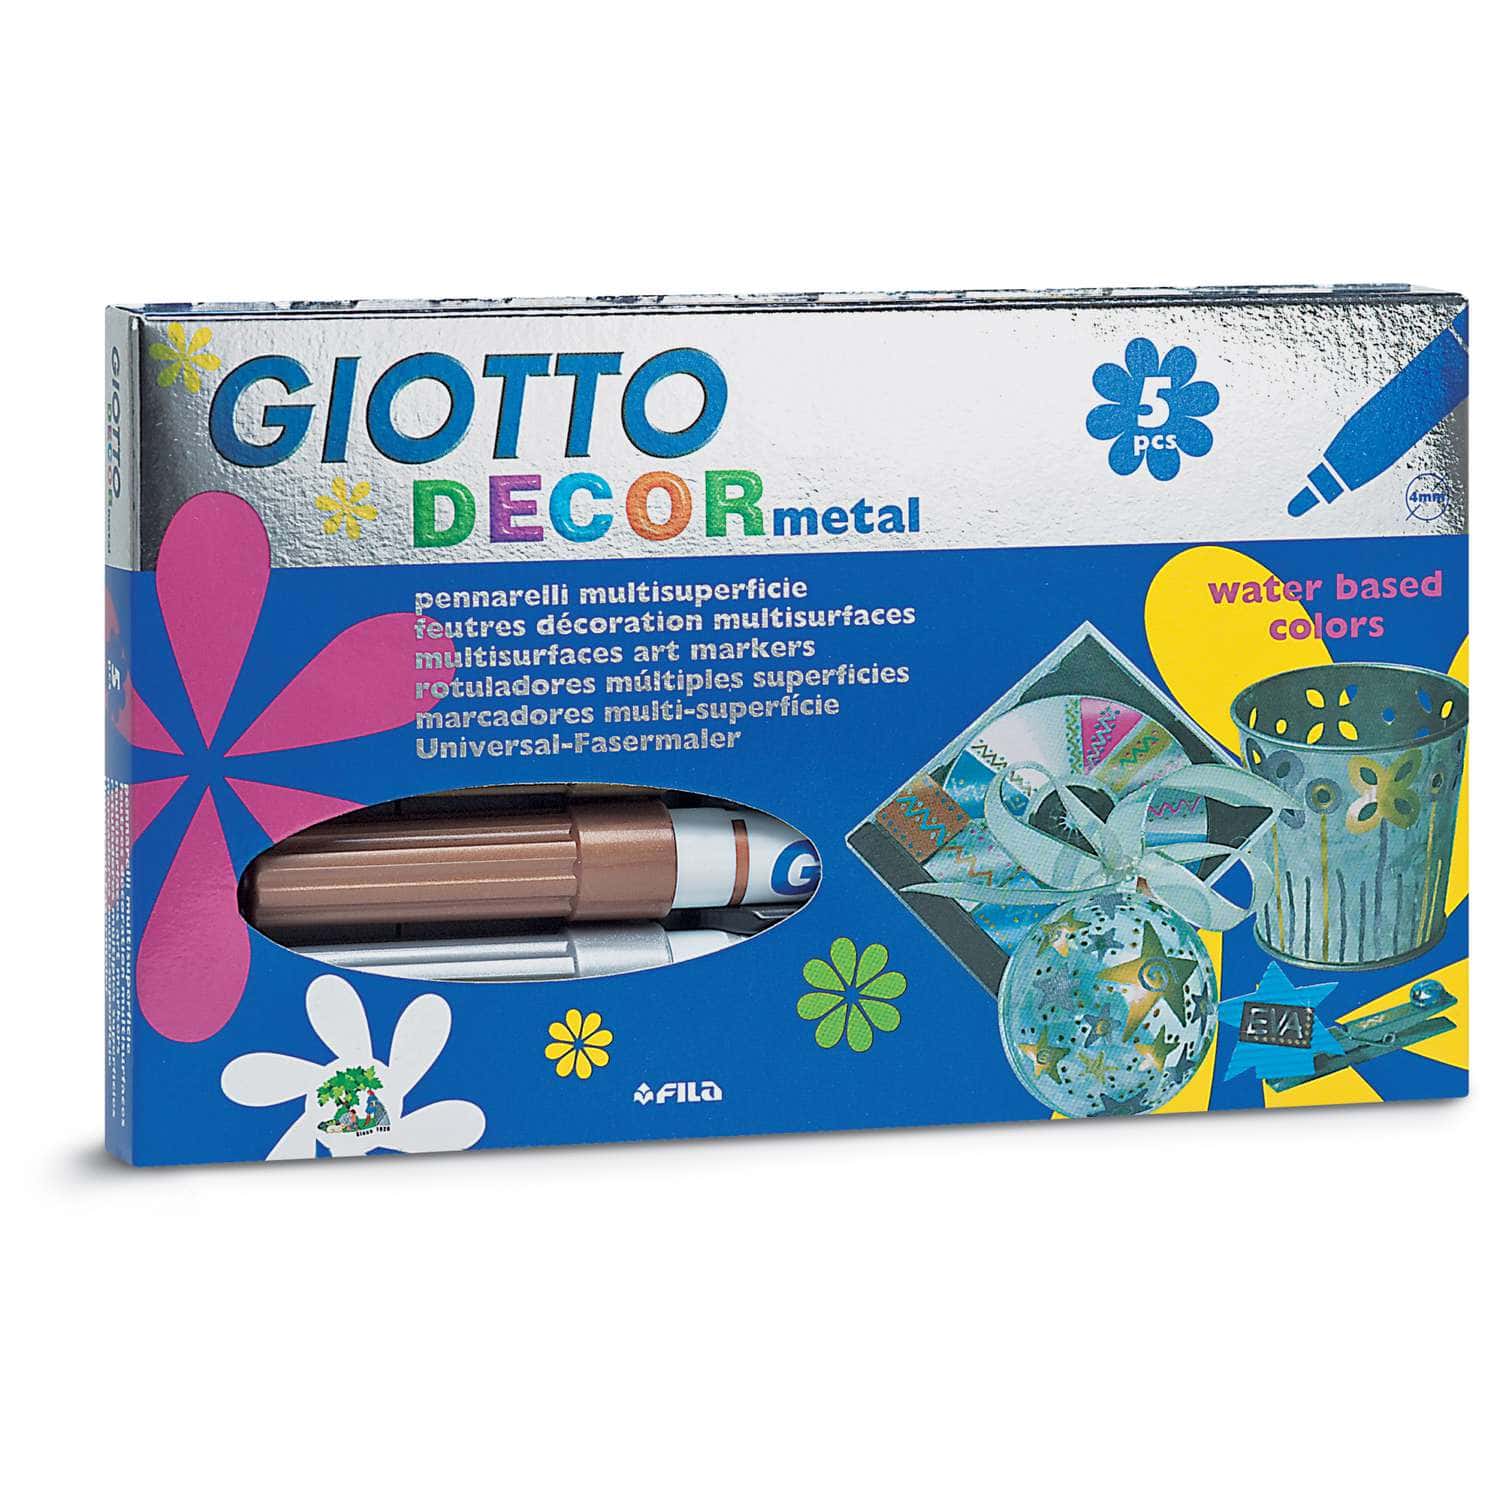 Fila Giotto Decor Metallic  5 pennarelli multisuperficie metallizzati